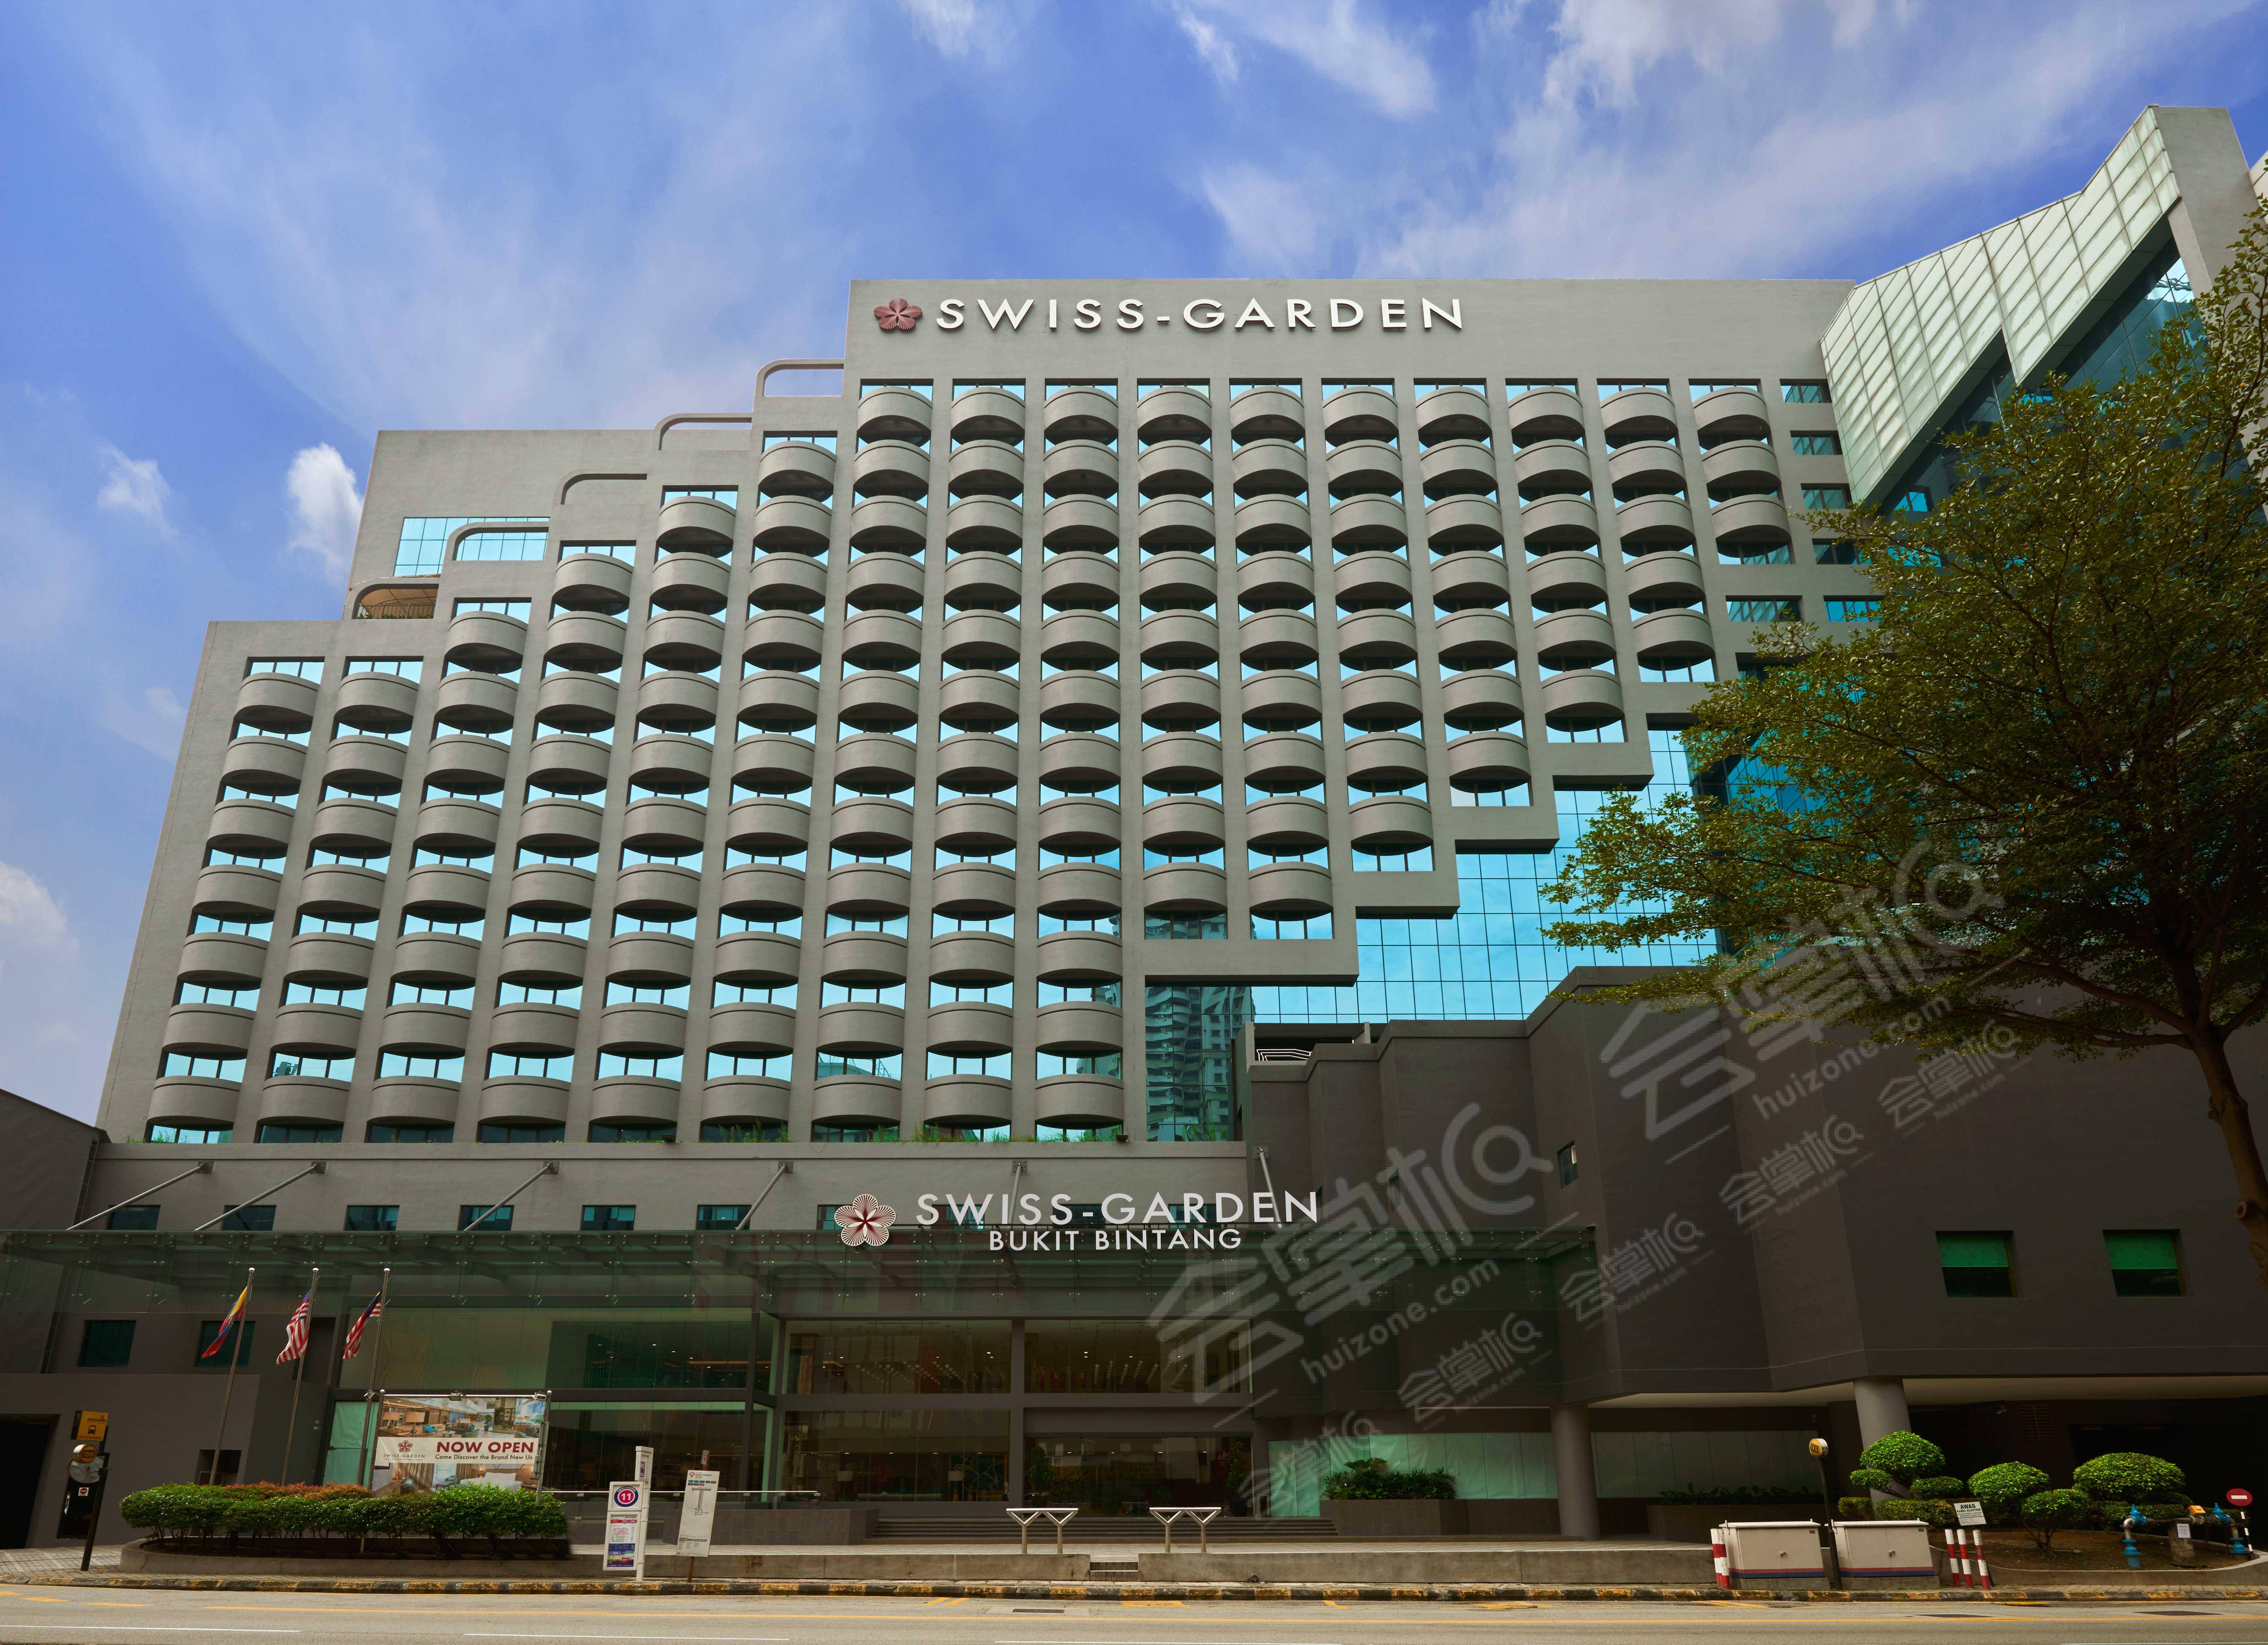 吉隆坡武吉免登瑞士花园 酒店(Swiss-Garden Hotel Bukit Bintang Kuala Lumpur)